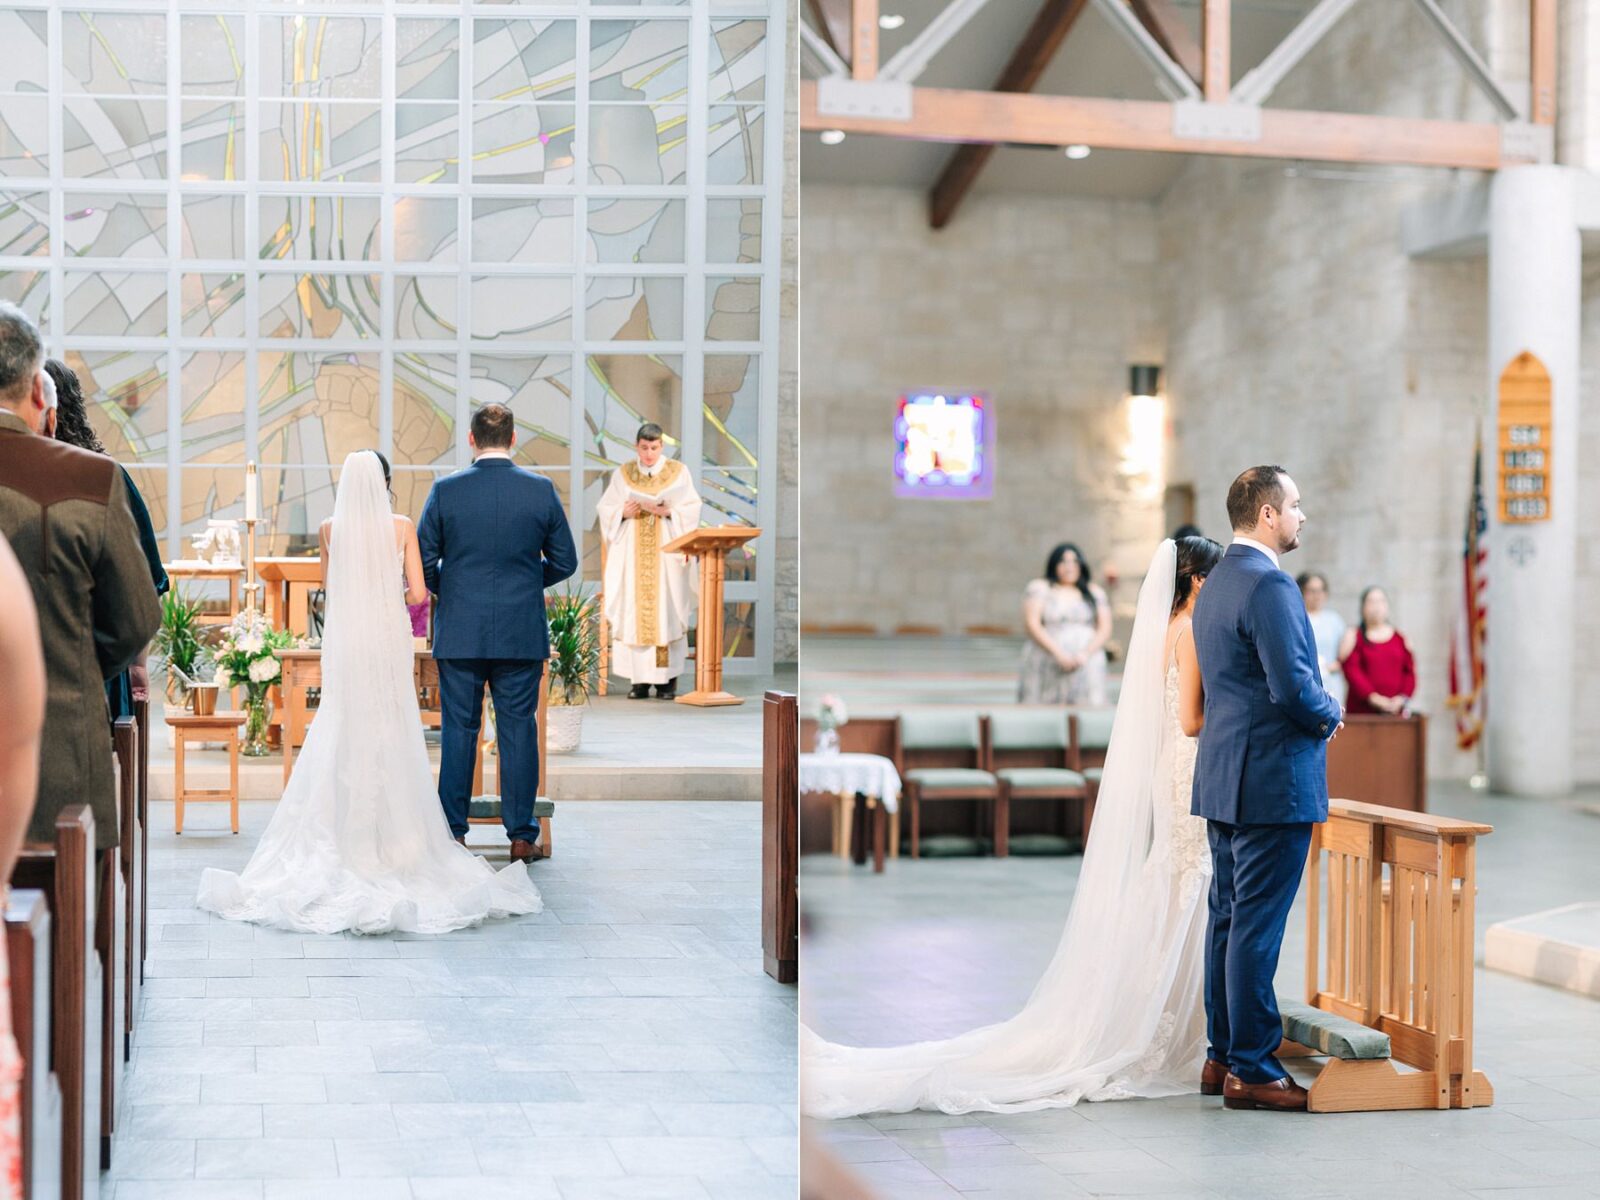 Catholic wedding, catholic mass ceremony, catholic wedding photography tips, photos by Tara Lyons Photography, Austin texas wedding photographer